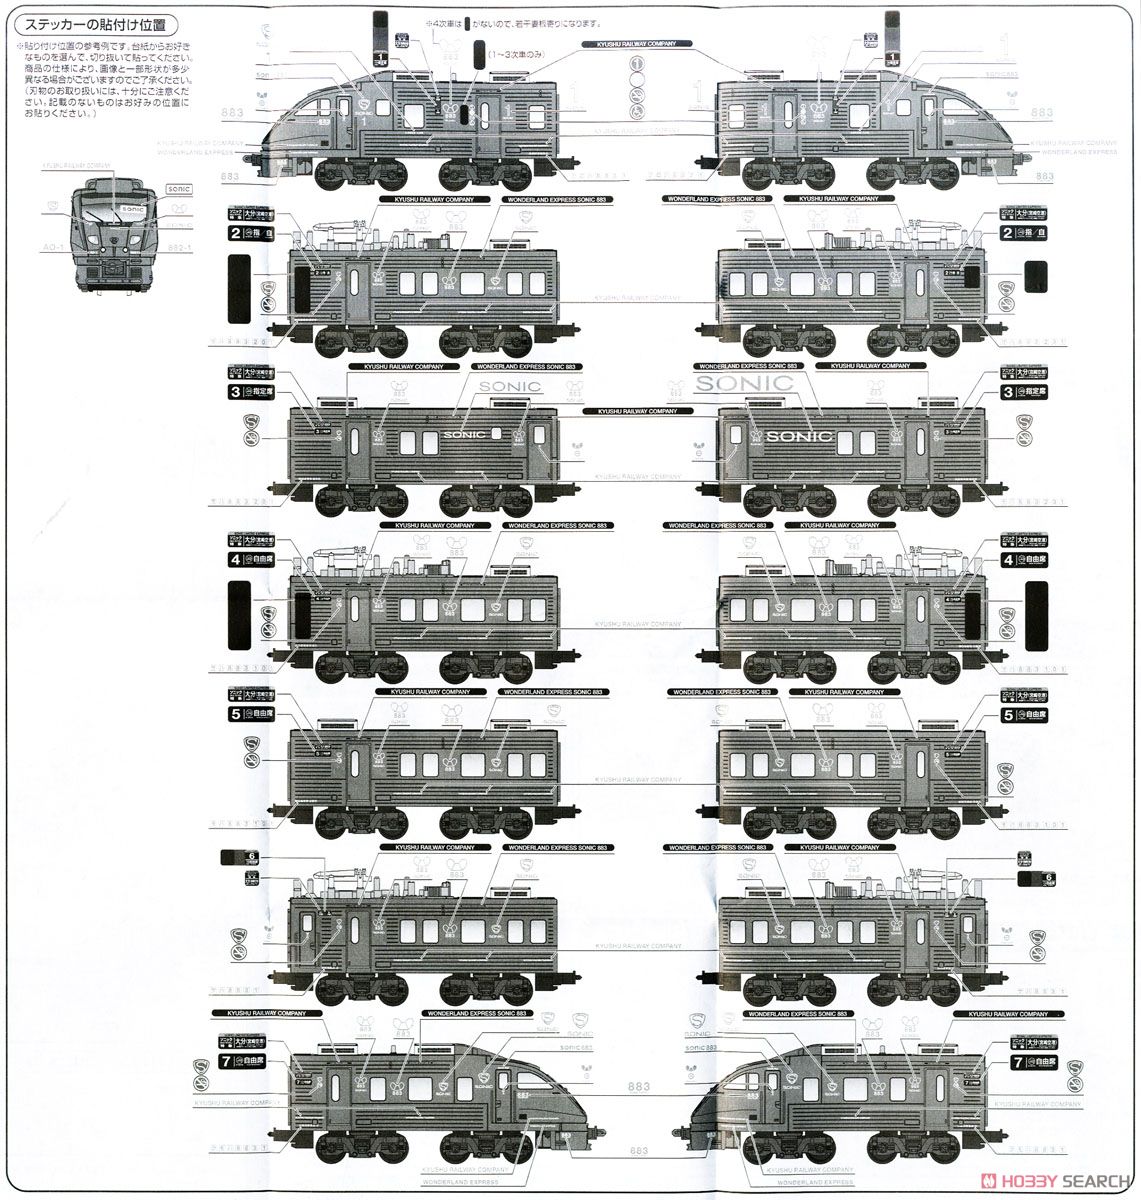 Bトレインショーティー 883系 「ソニック」 SONIC EXPRESS (4両セット) (水戸岡鋭治コレクションシリーズ) (鉄道模型) 塗装1